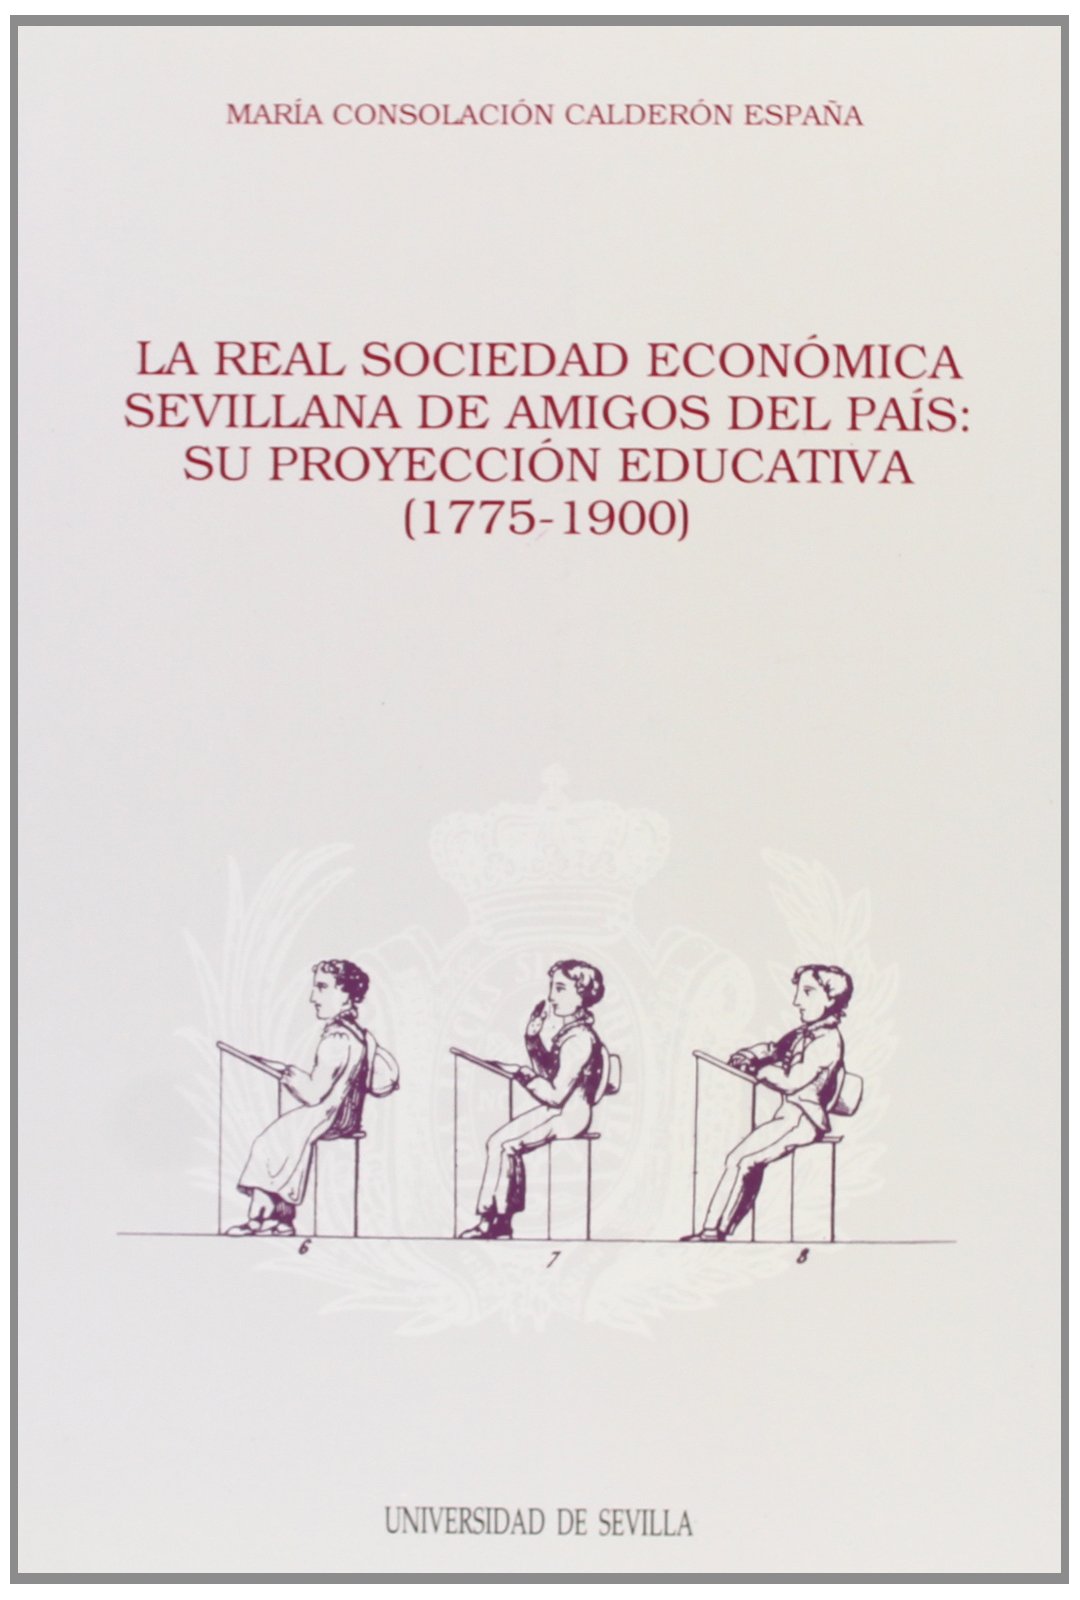 La Real Sociedad Economica Sevillana de Amigos del Pais. Su proyeccion educativa (1775-1900).